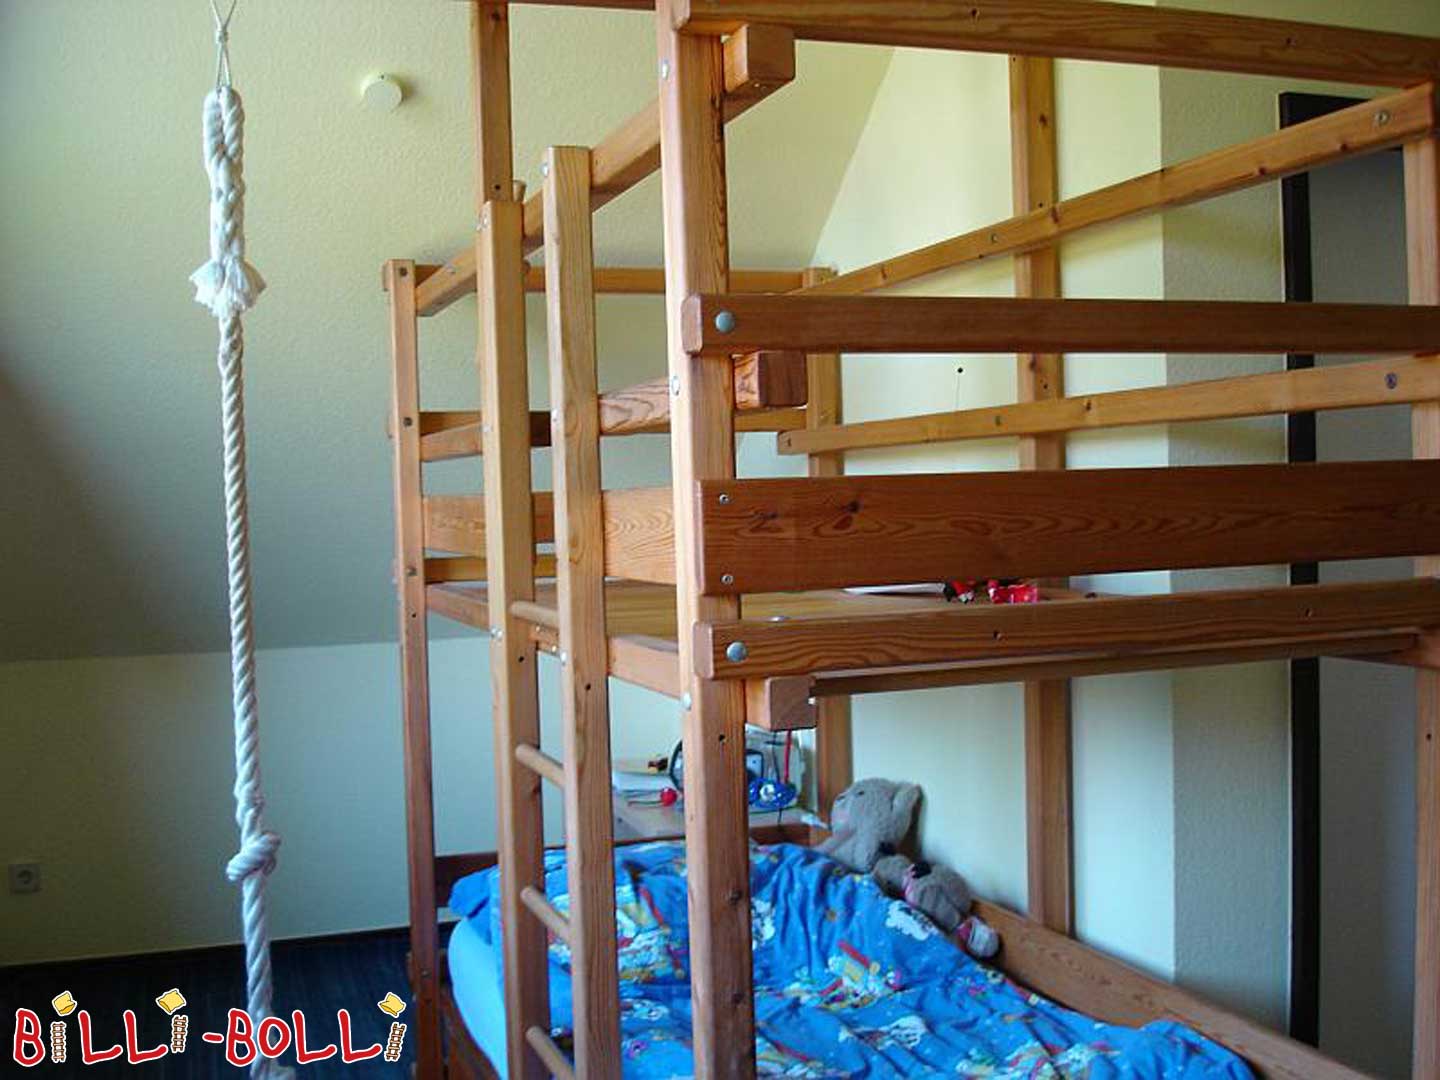 Gullibo gusarski krevet (Kategorija: Korišten krevet u potkrovlju)